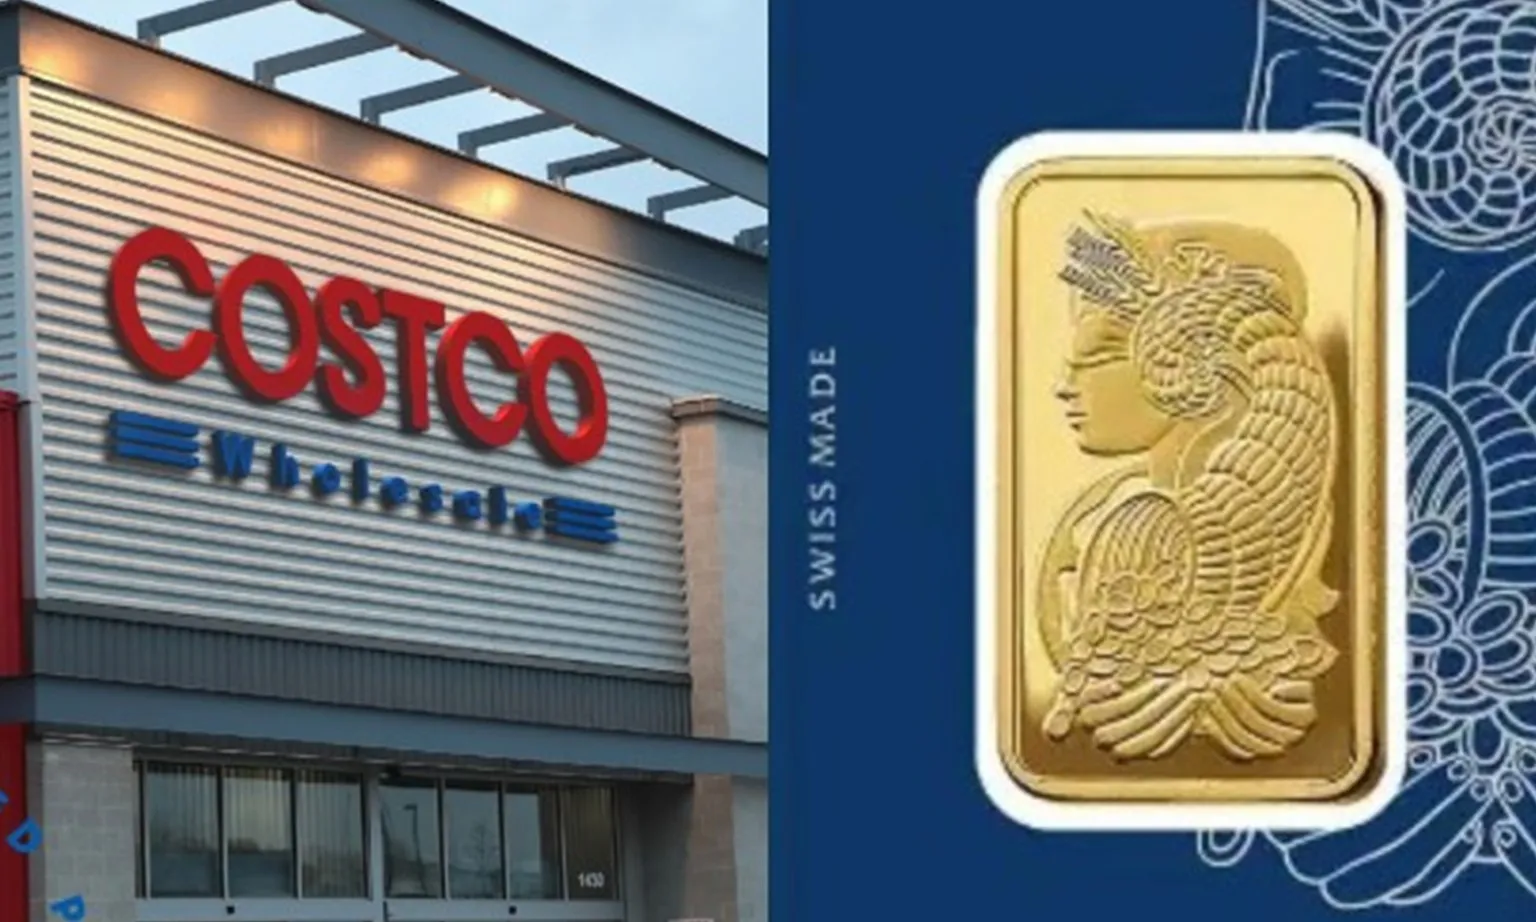 Giá kim loại quý tăng vọt, Costco thu trăm triệu USD mỗi tháng từ bán vàng miếng